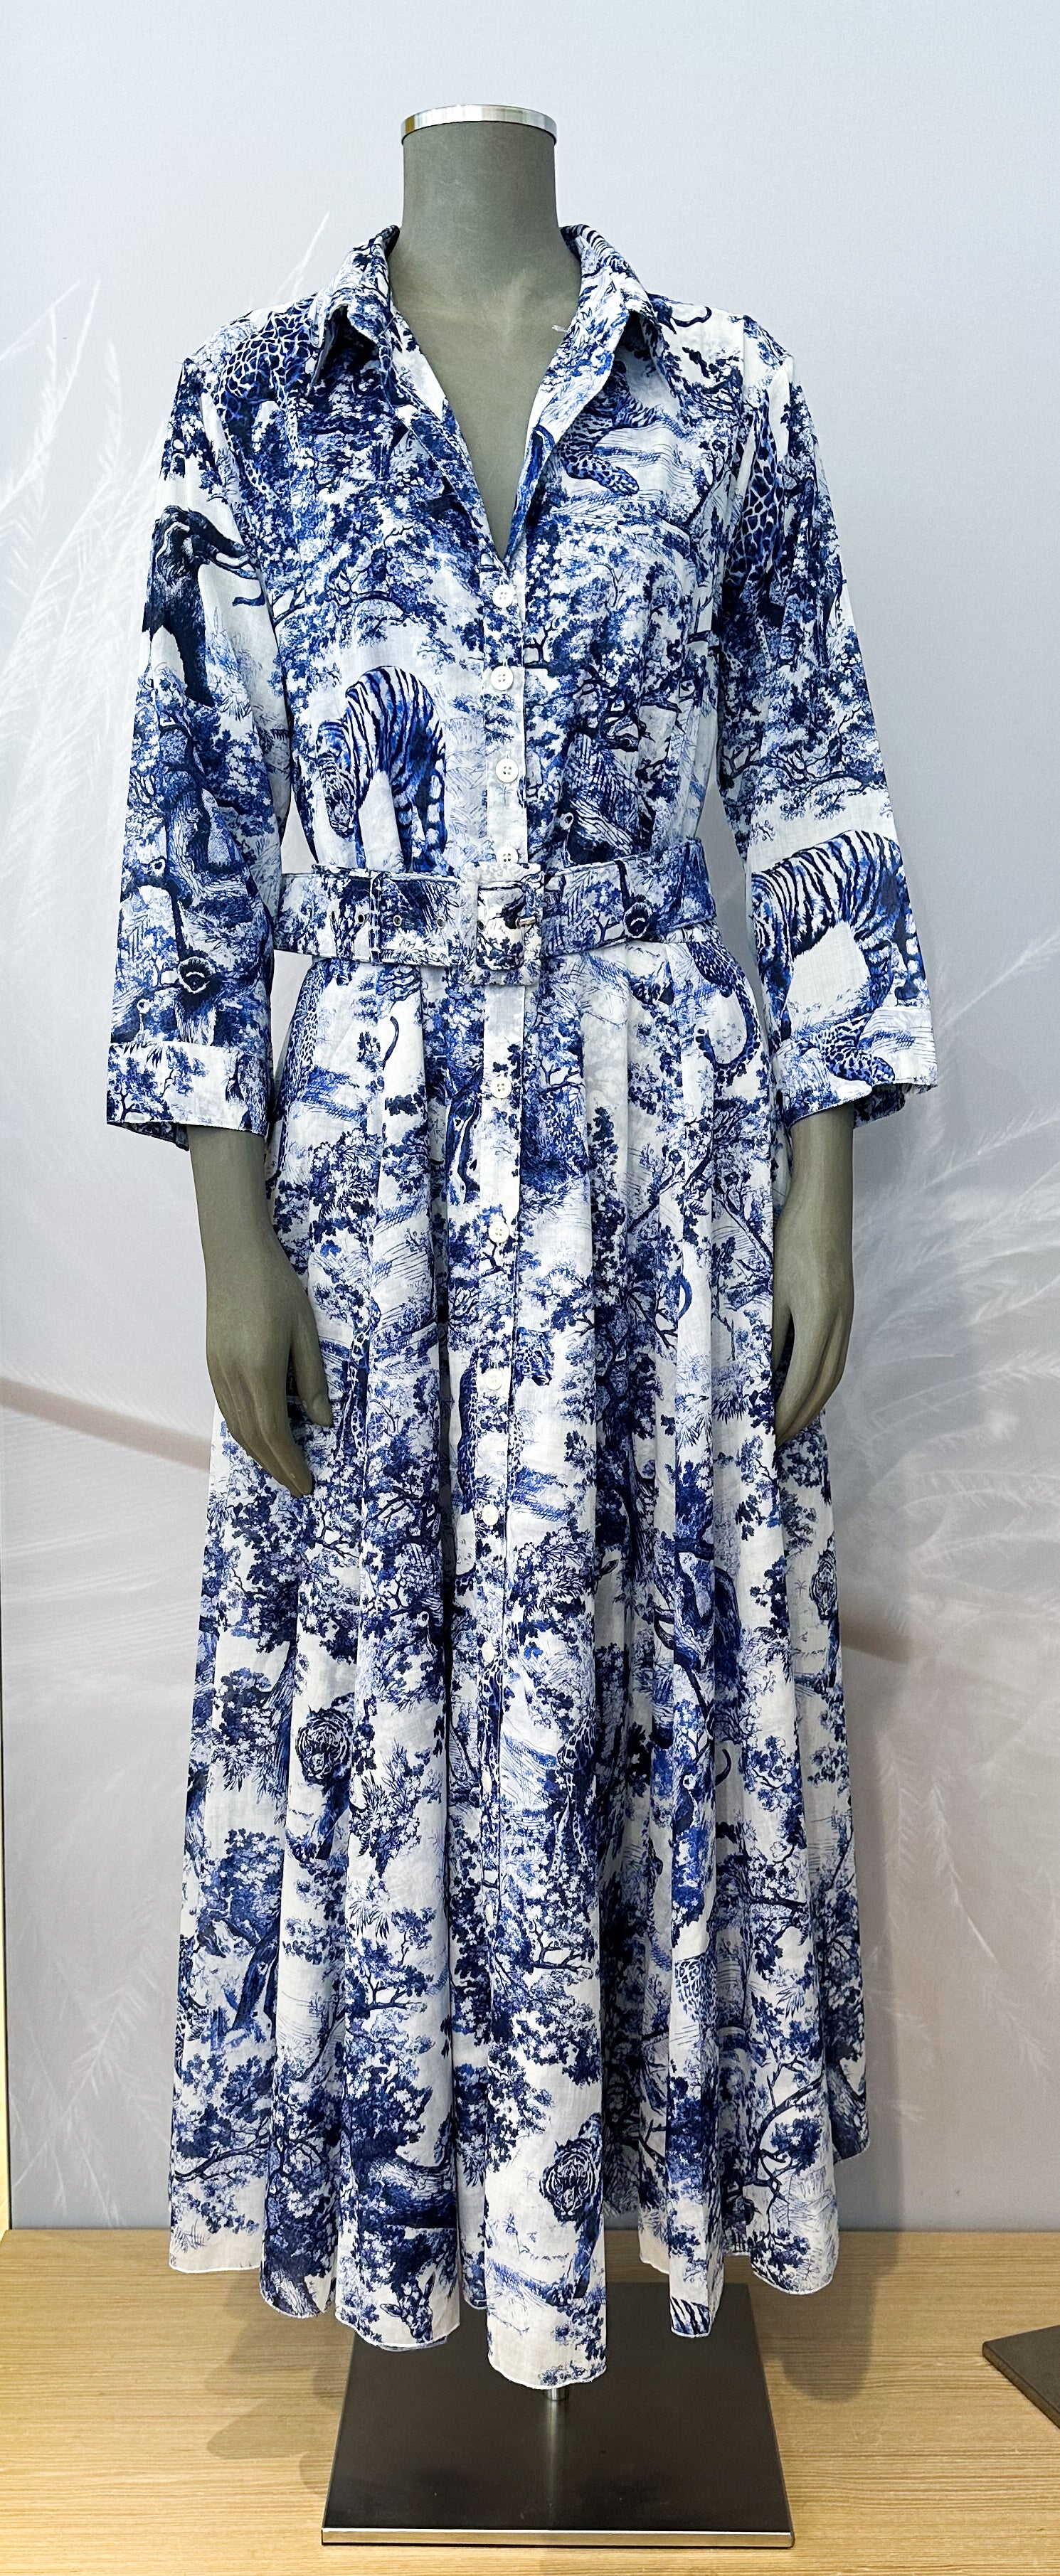 Kleid SAMANTHA SUNG Avenue Shirt Dress